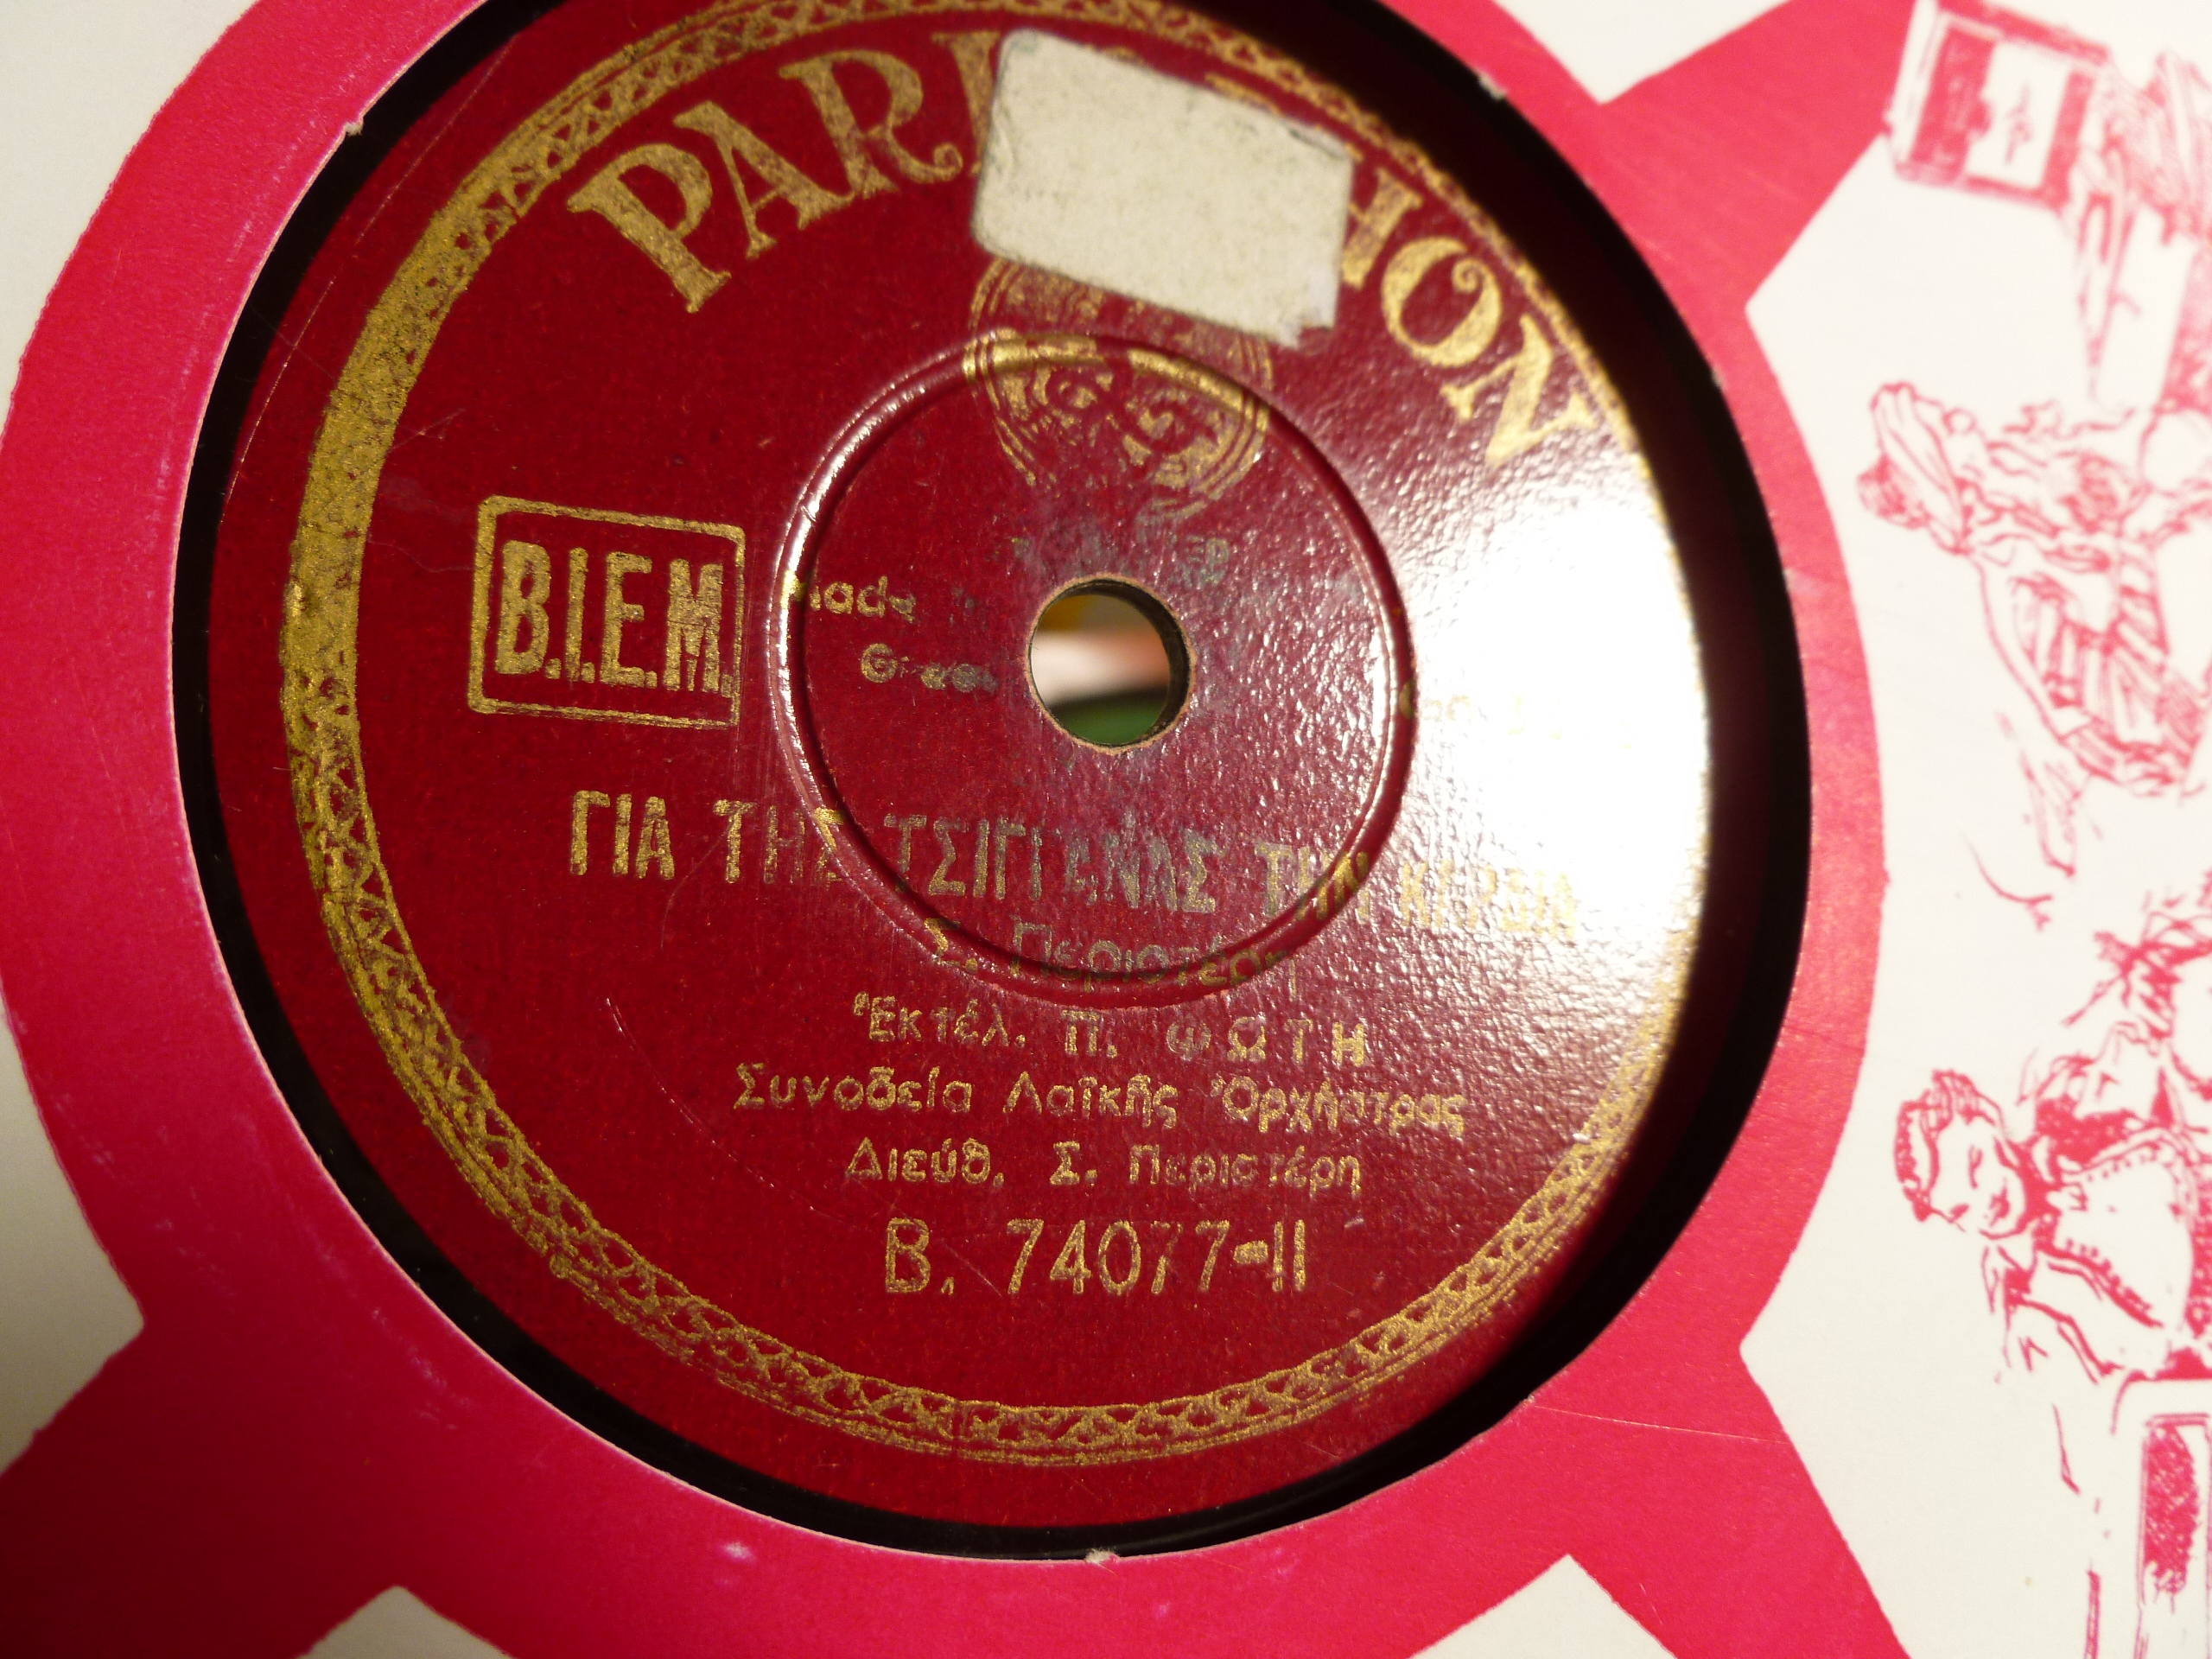 Parlophone  B-74077 II